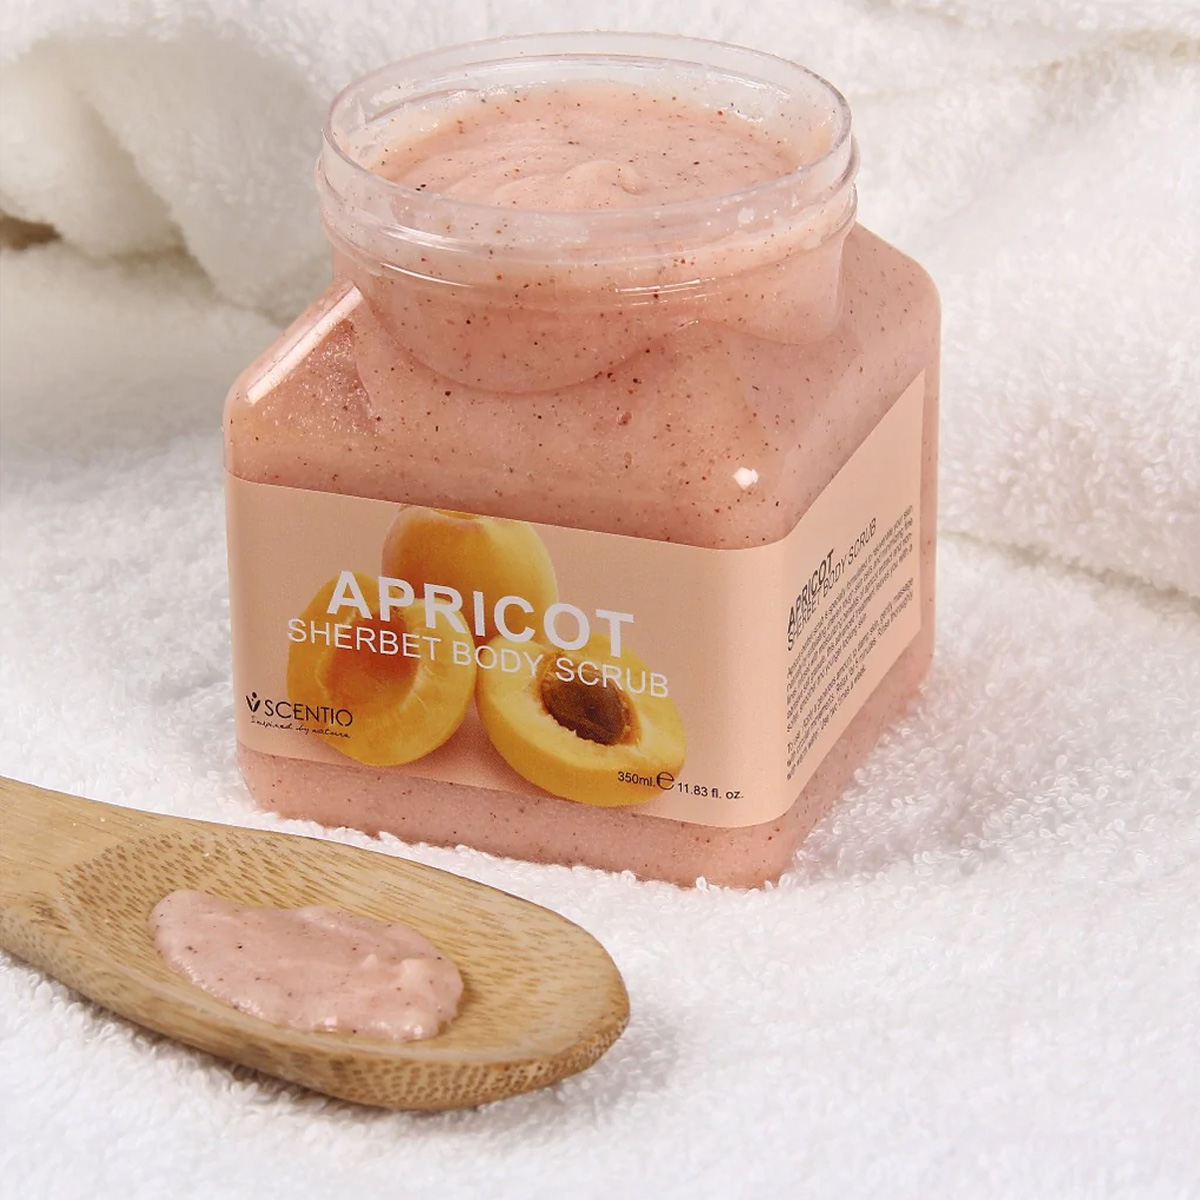 Tẩy Tế Bào Chết Toàn Thân Hương Mơ Beauty Buffet Apricot Sherbet Body Scrub